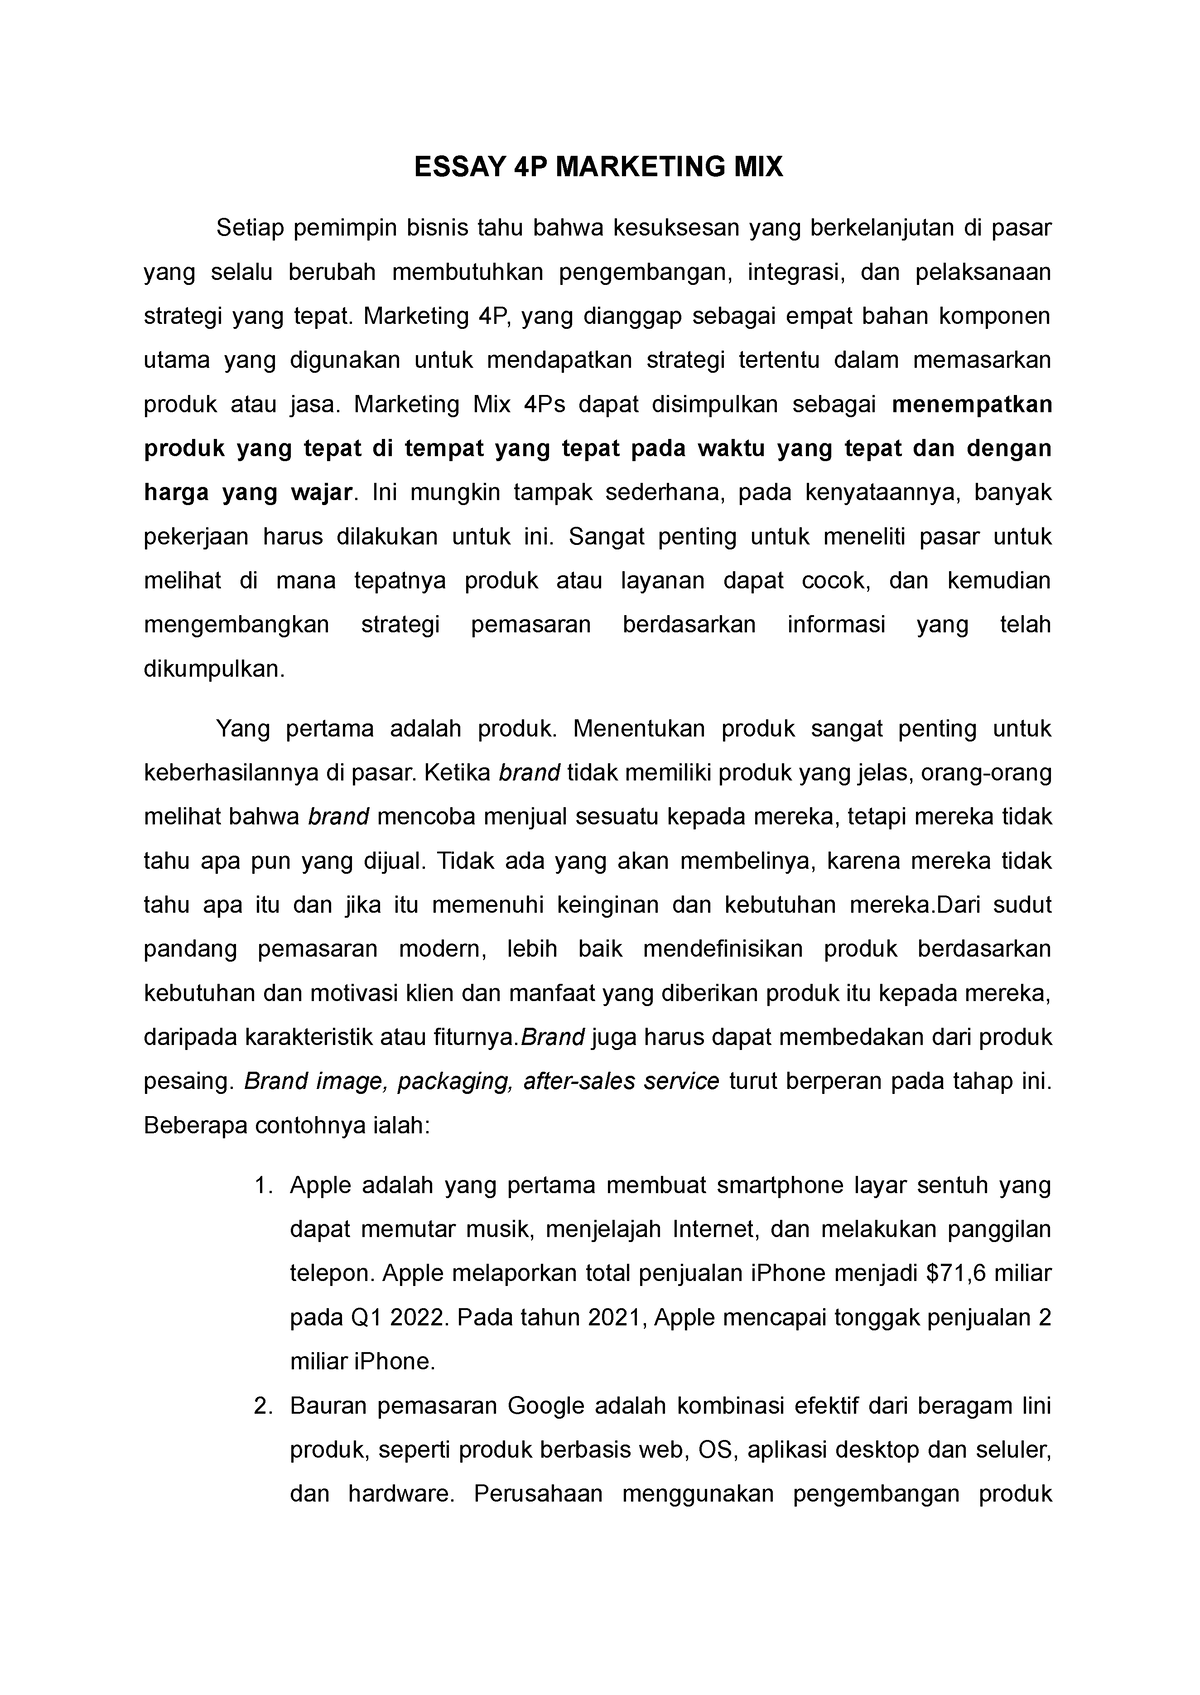 marketing mix essay pdf